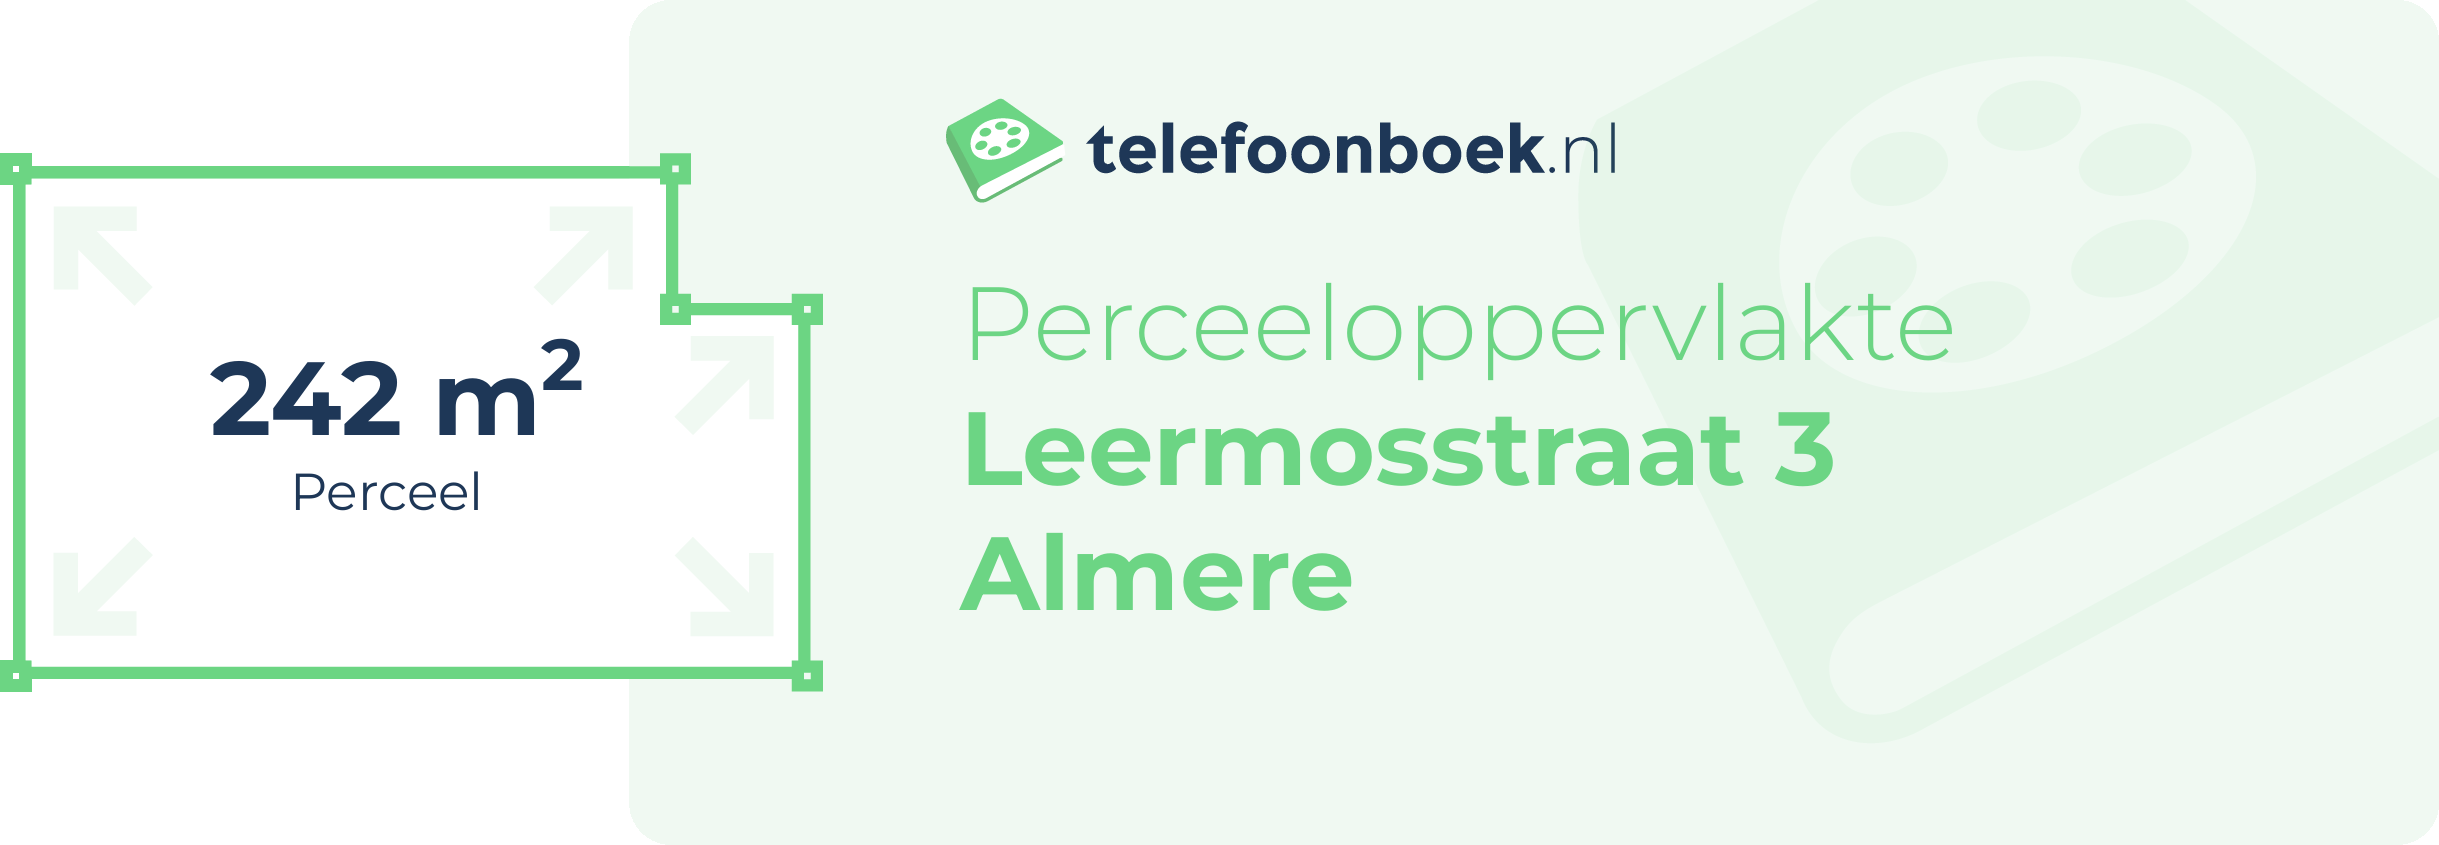 Perceeloppervlakte Leermosstraat 3 Almere